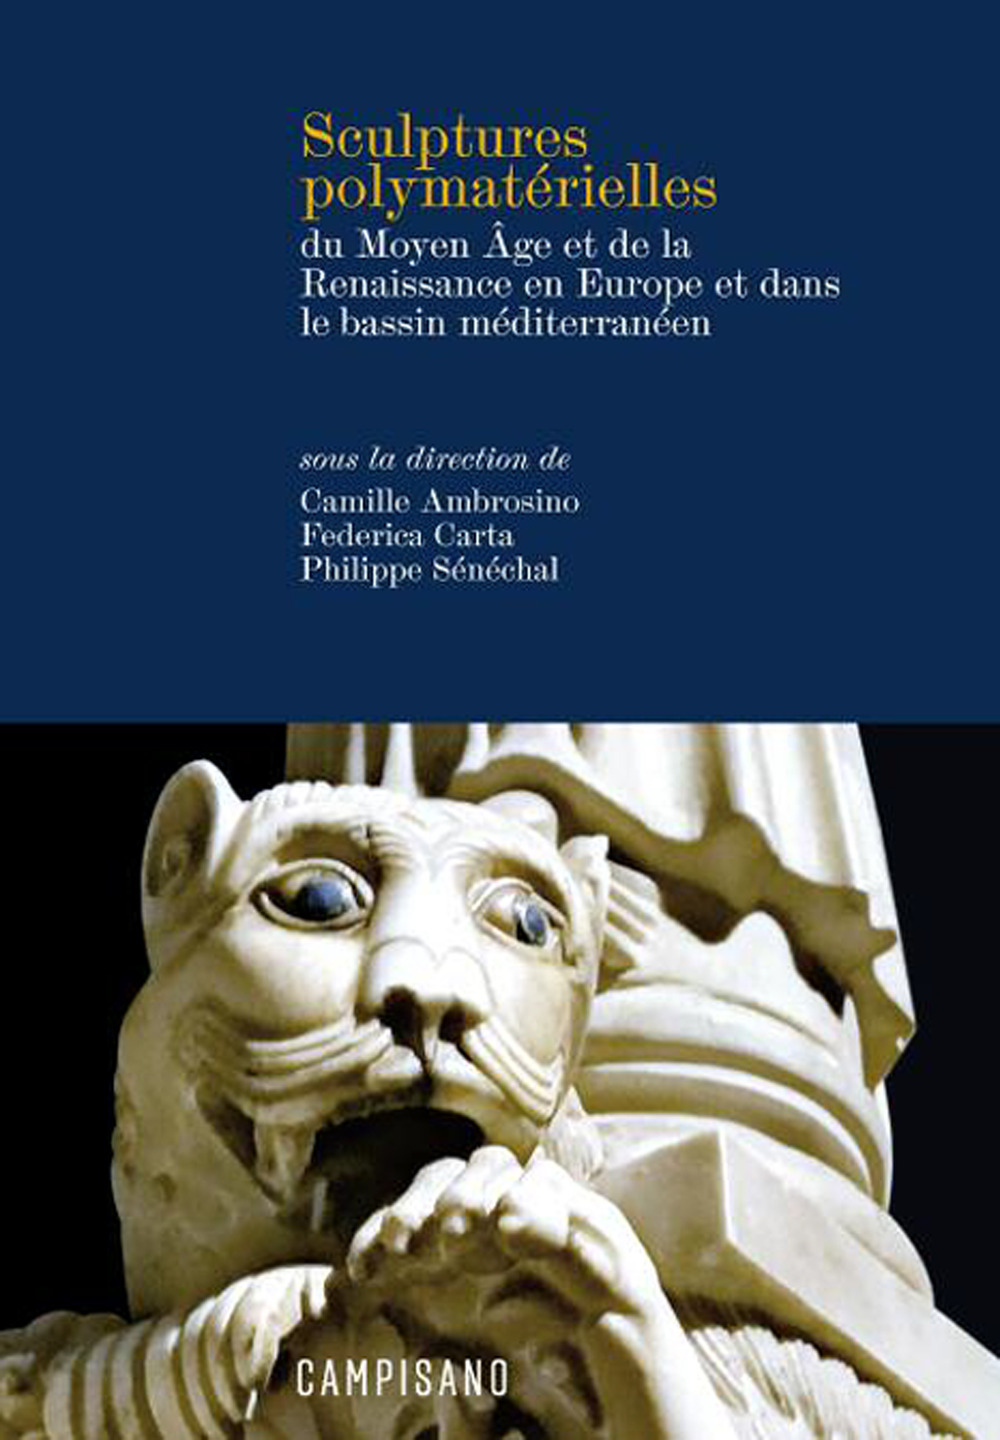 Sculptures polymatérielles du Moyen Âge et de la Renaissance en Europe et dans le bassin méditerranéen